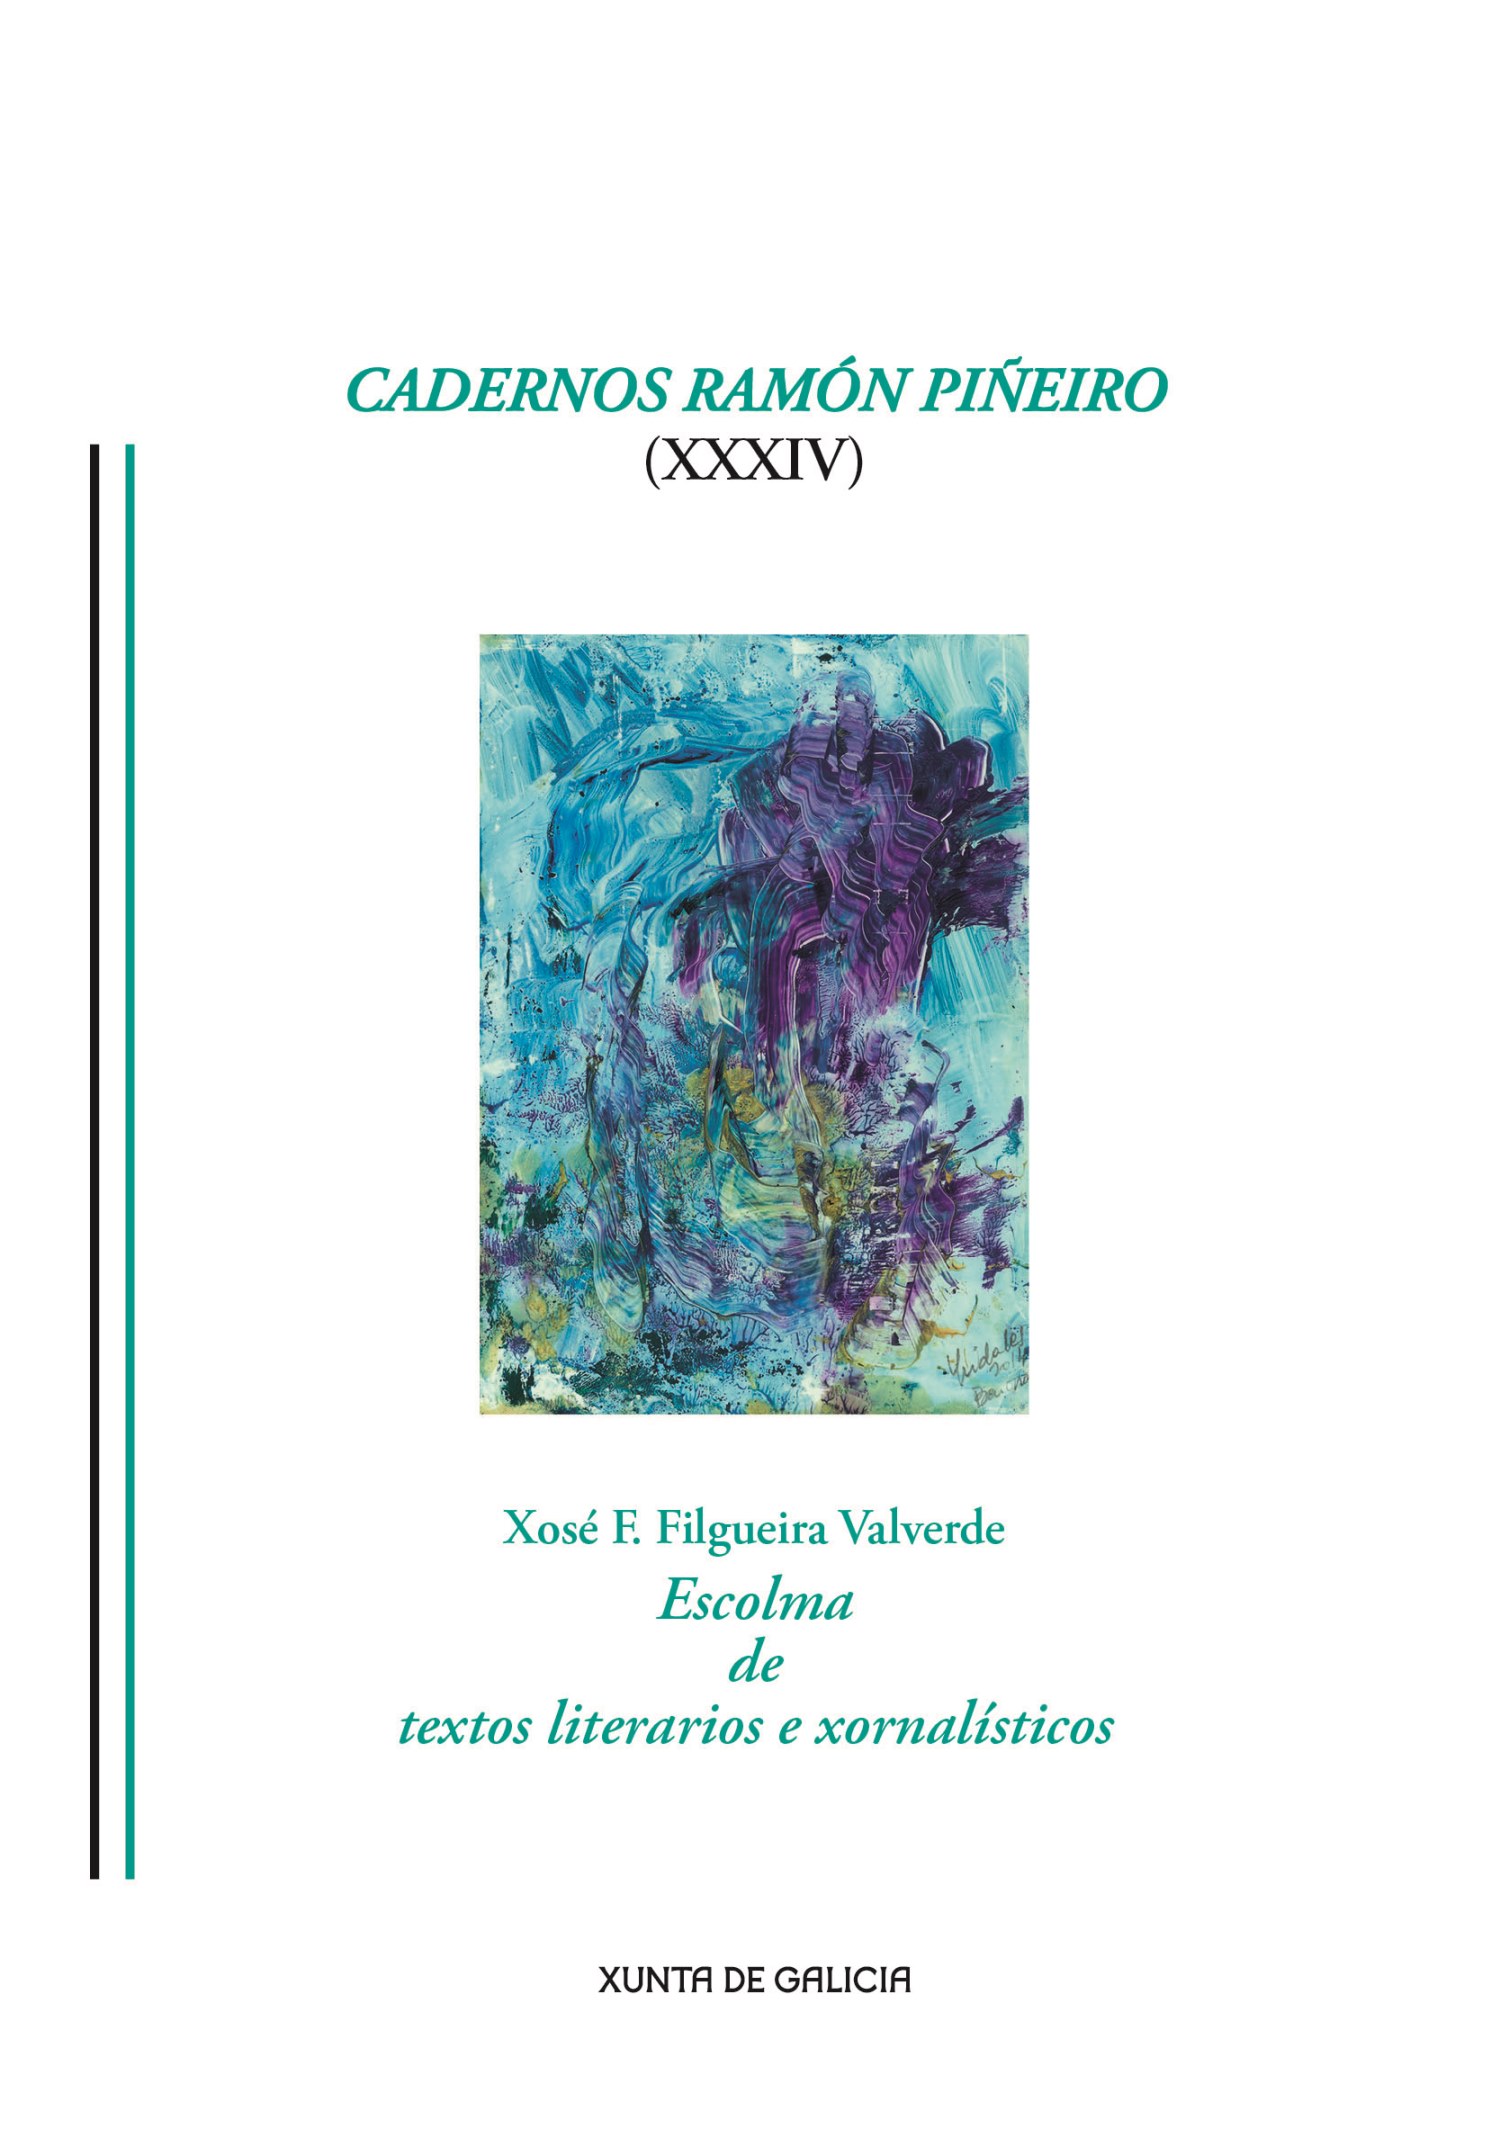 Logo Cadernos Ramón Piñeiro XXXIV. Xosé F. Filgueira Valverde. Escolma de textos literarios e xornalísticos